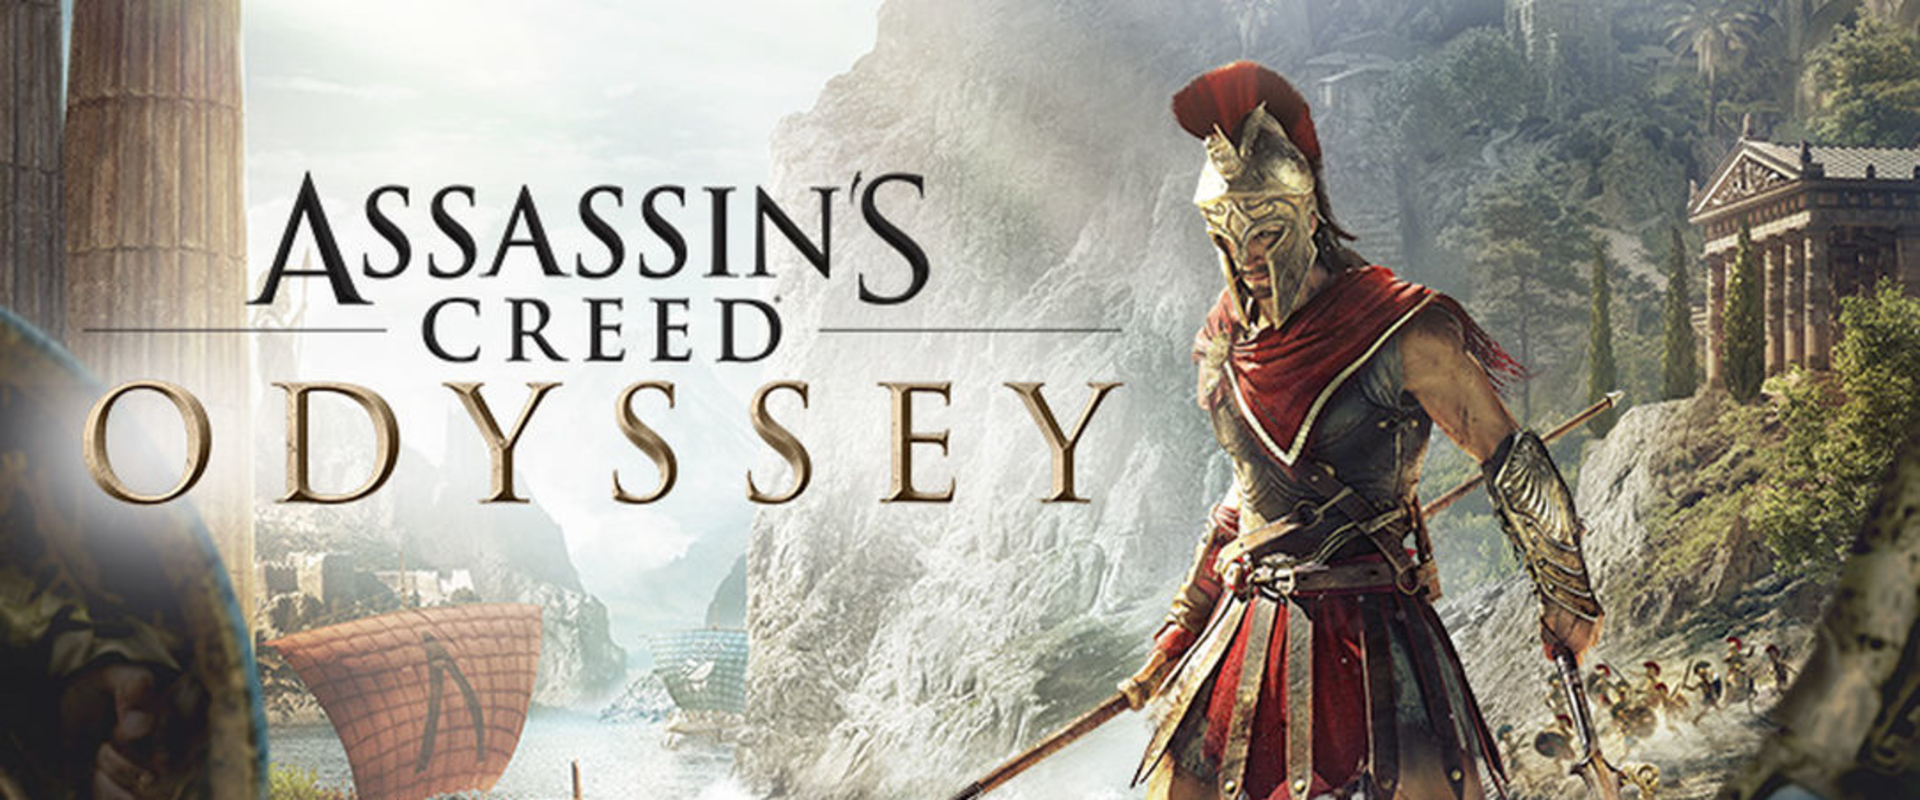 Itt az első videó az Assassin's Creed Odyssey játékmenetéről